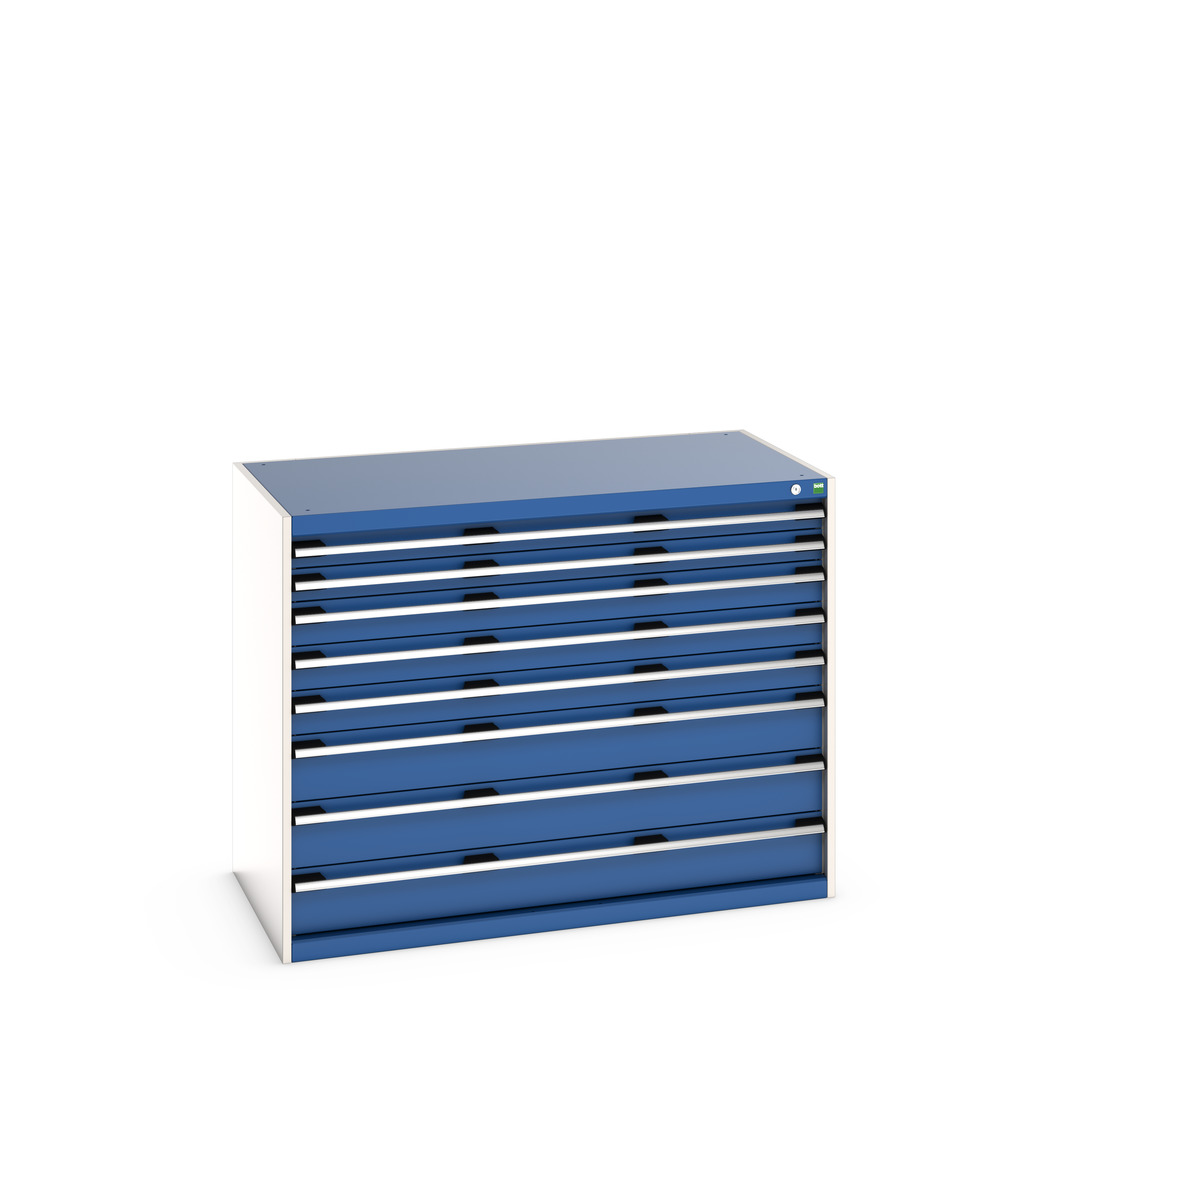 40030020.11V - cubio drawer cabinet